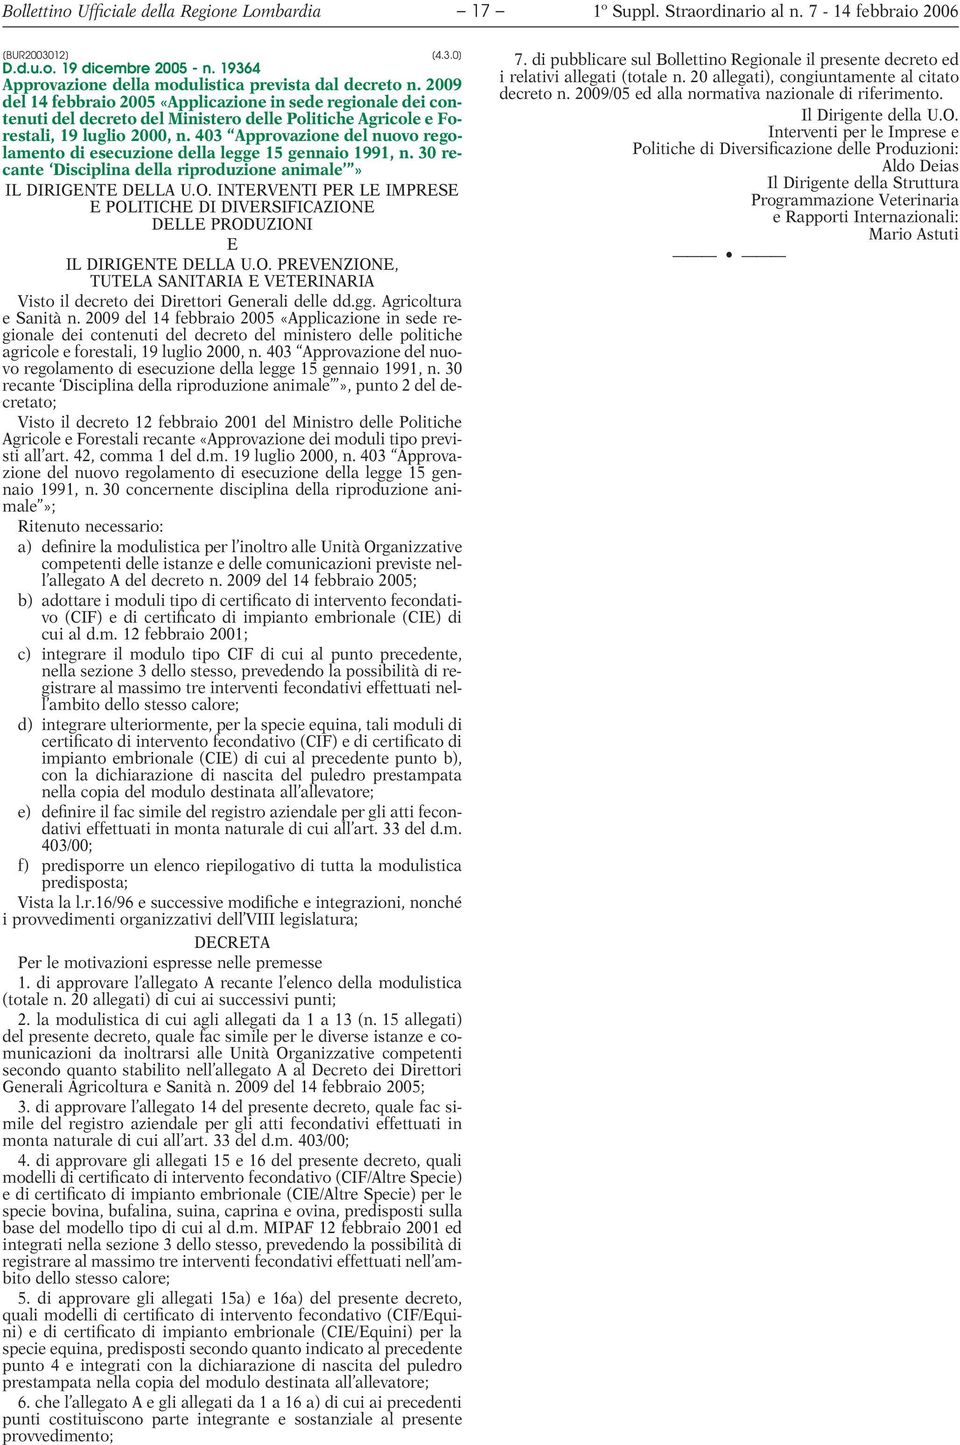 2009 del 14 febbraio 2005 «Applicazione in sede regionale dei contenuti del decreto del Ministero delle Politiche Agricole e Forestali, 19 luglio 2000, n.